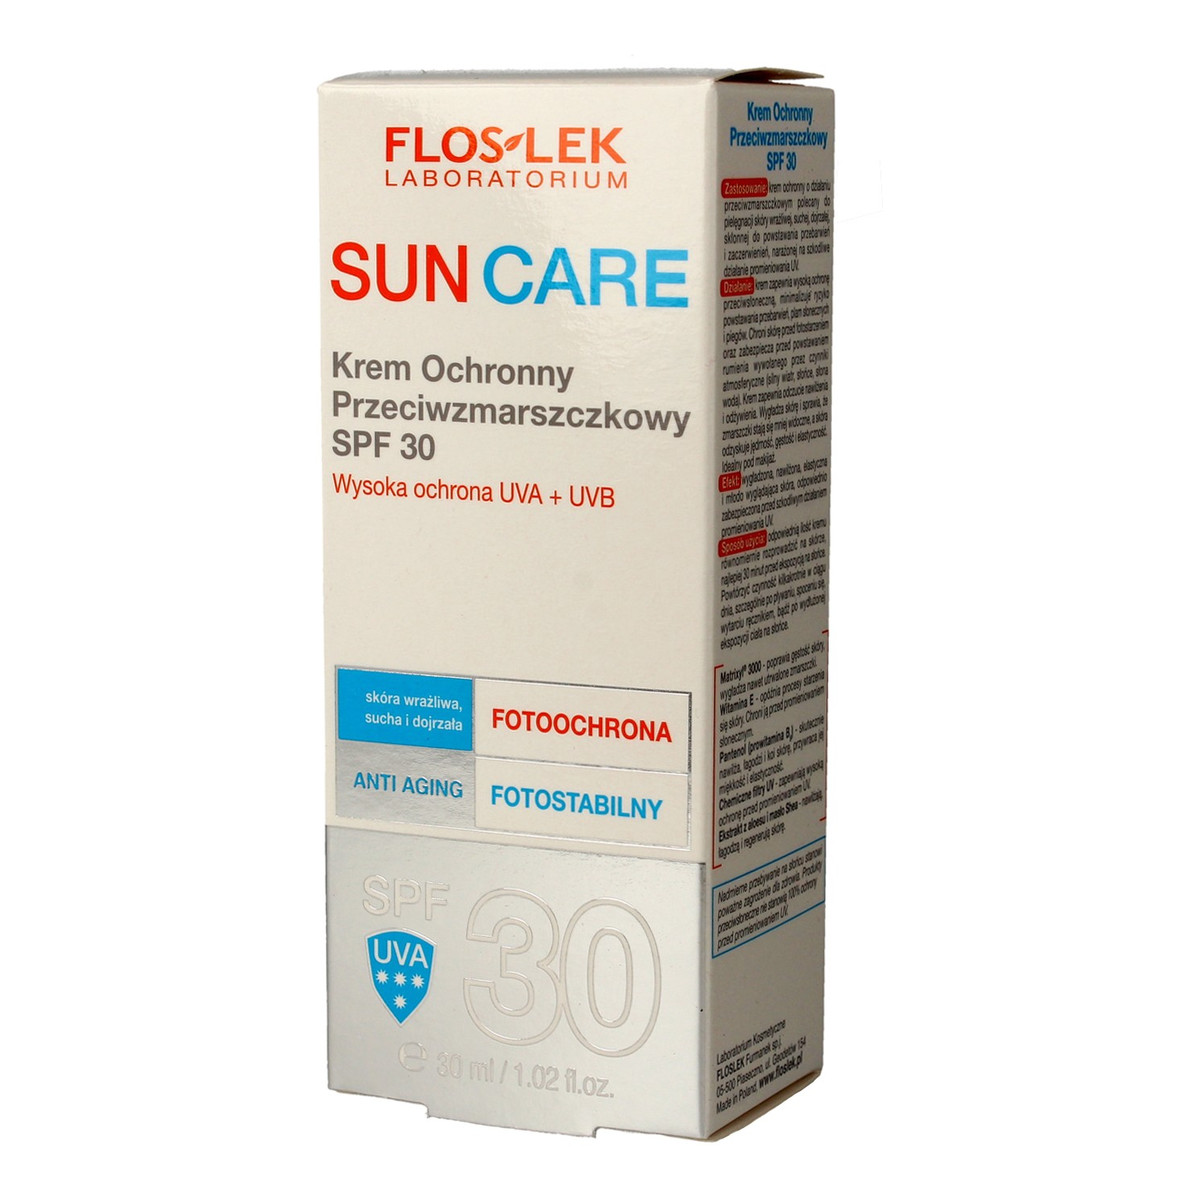 FlosLek Sun Care Krem ochronny przeciwzmarszczkowy SPF30 30ml